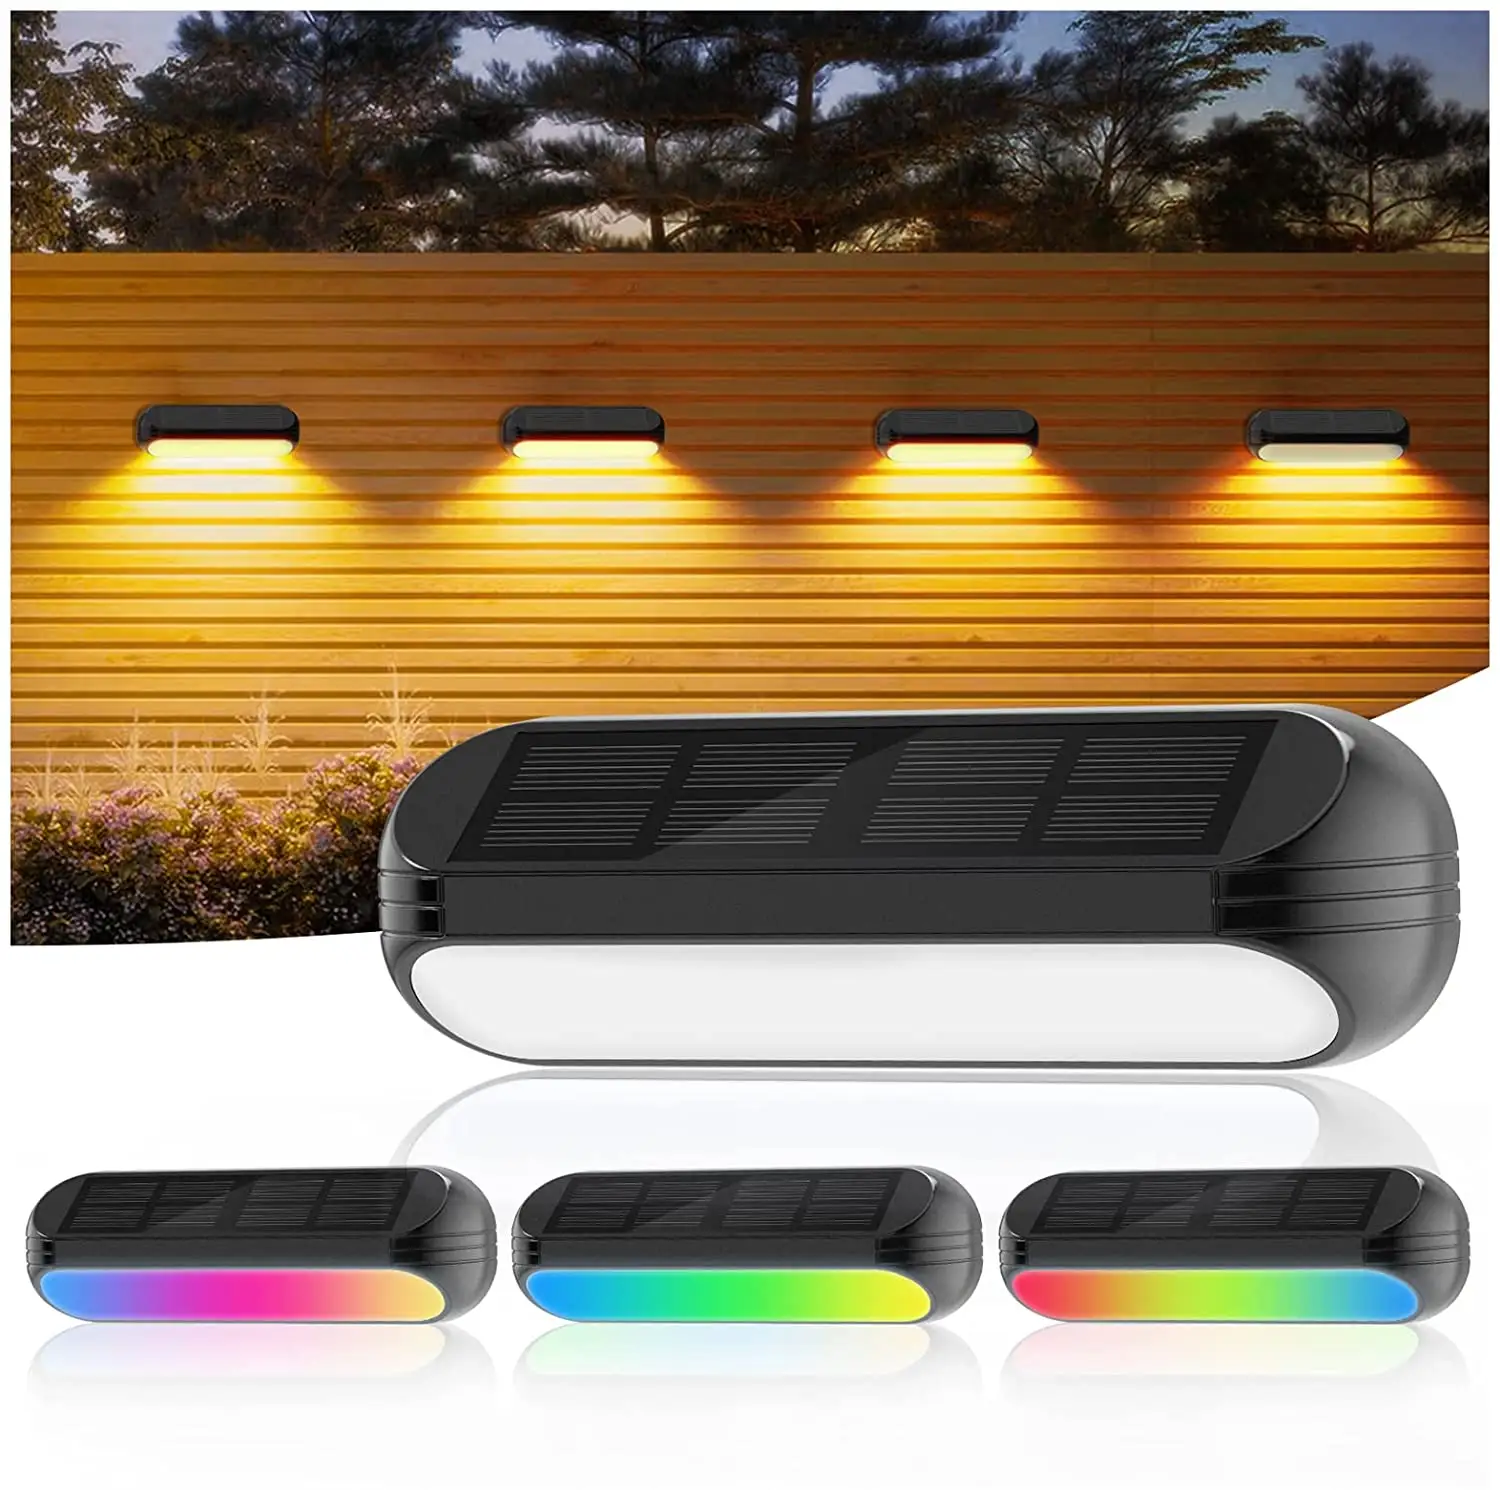 Lumières de clôture solaire 6 paquets blanc chaud et mode RVB lumière de pont solaire étanche extérieur jardin clôture lumière décorative